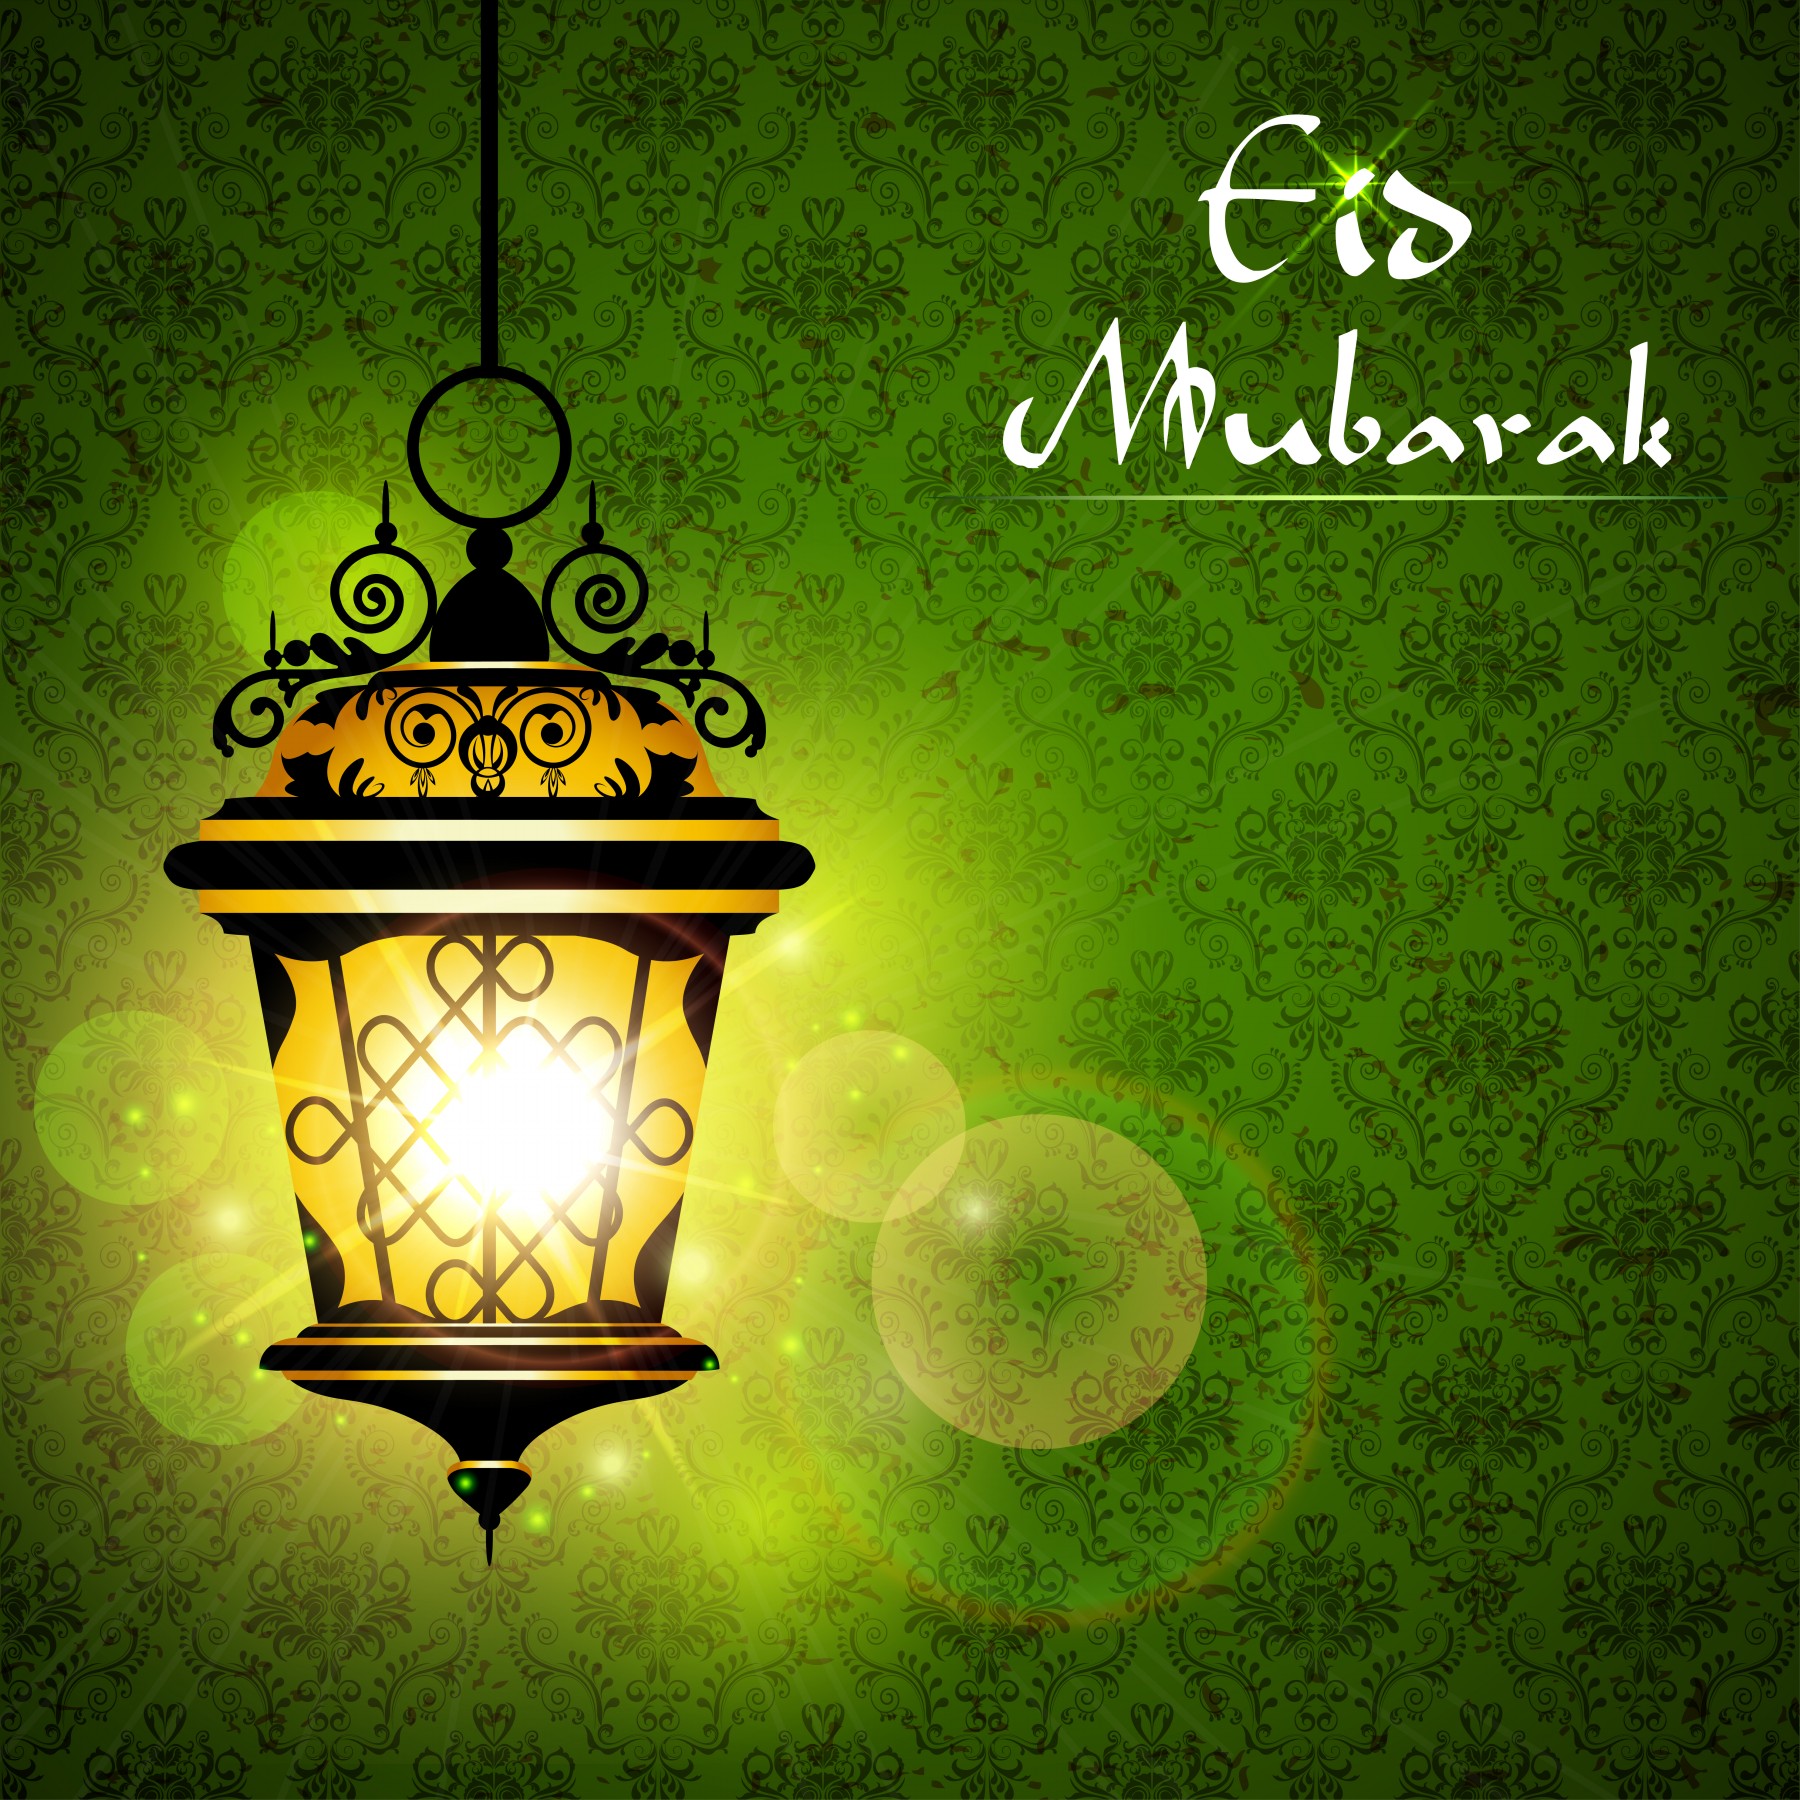 Eid Mubarak Images| - My Site